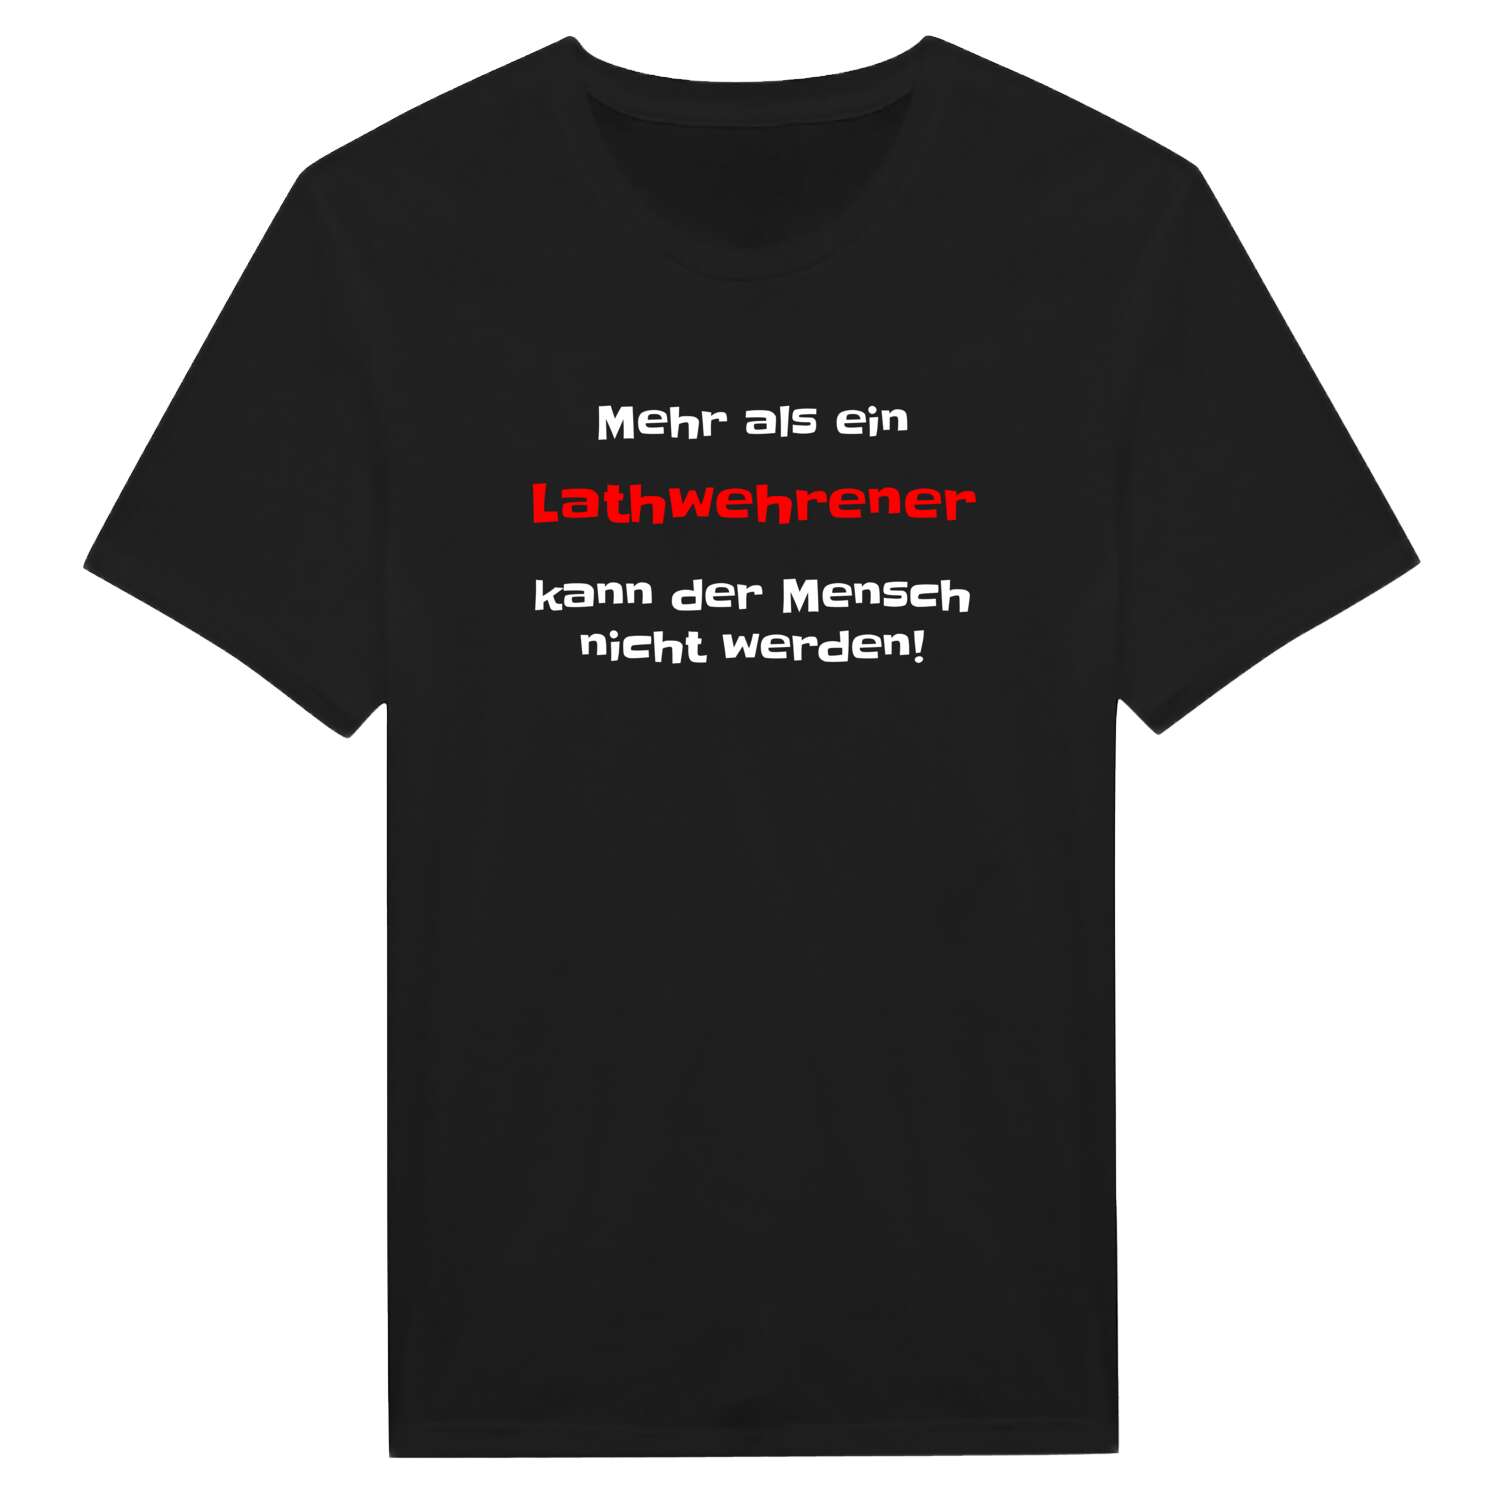 Lathwehren T-Shirt »Mehr als ein«